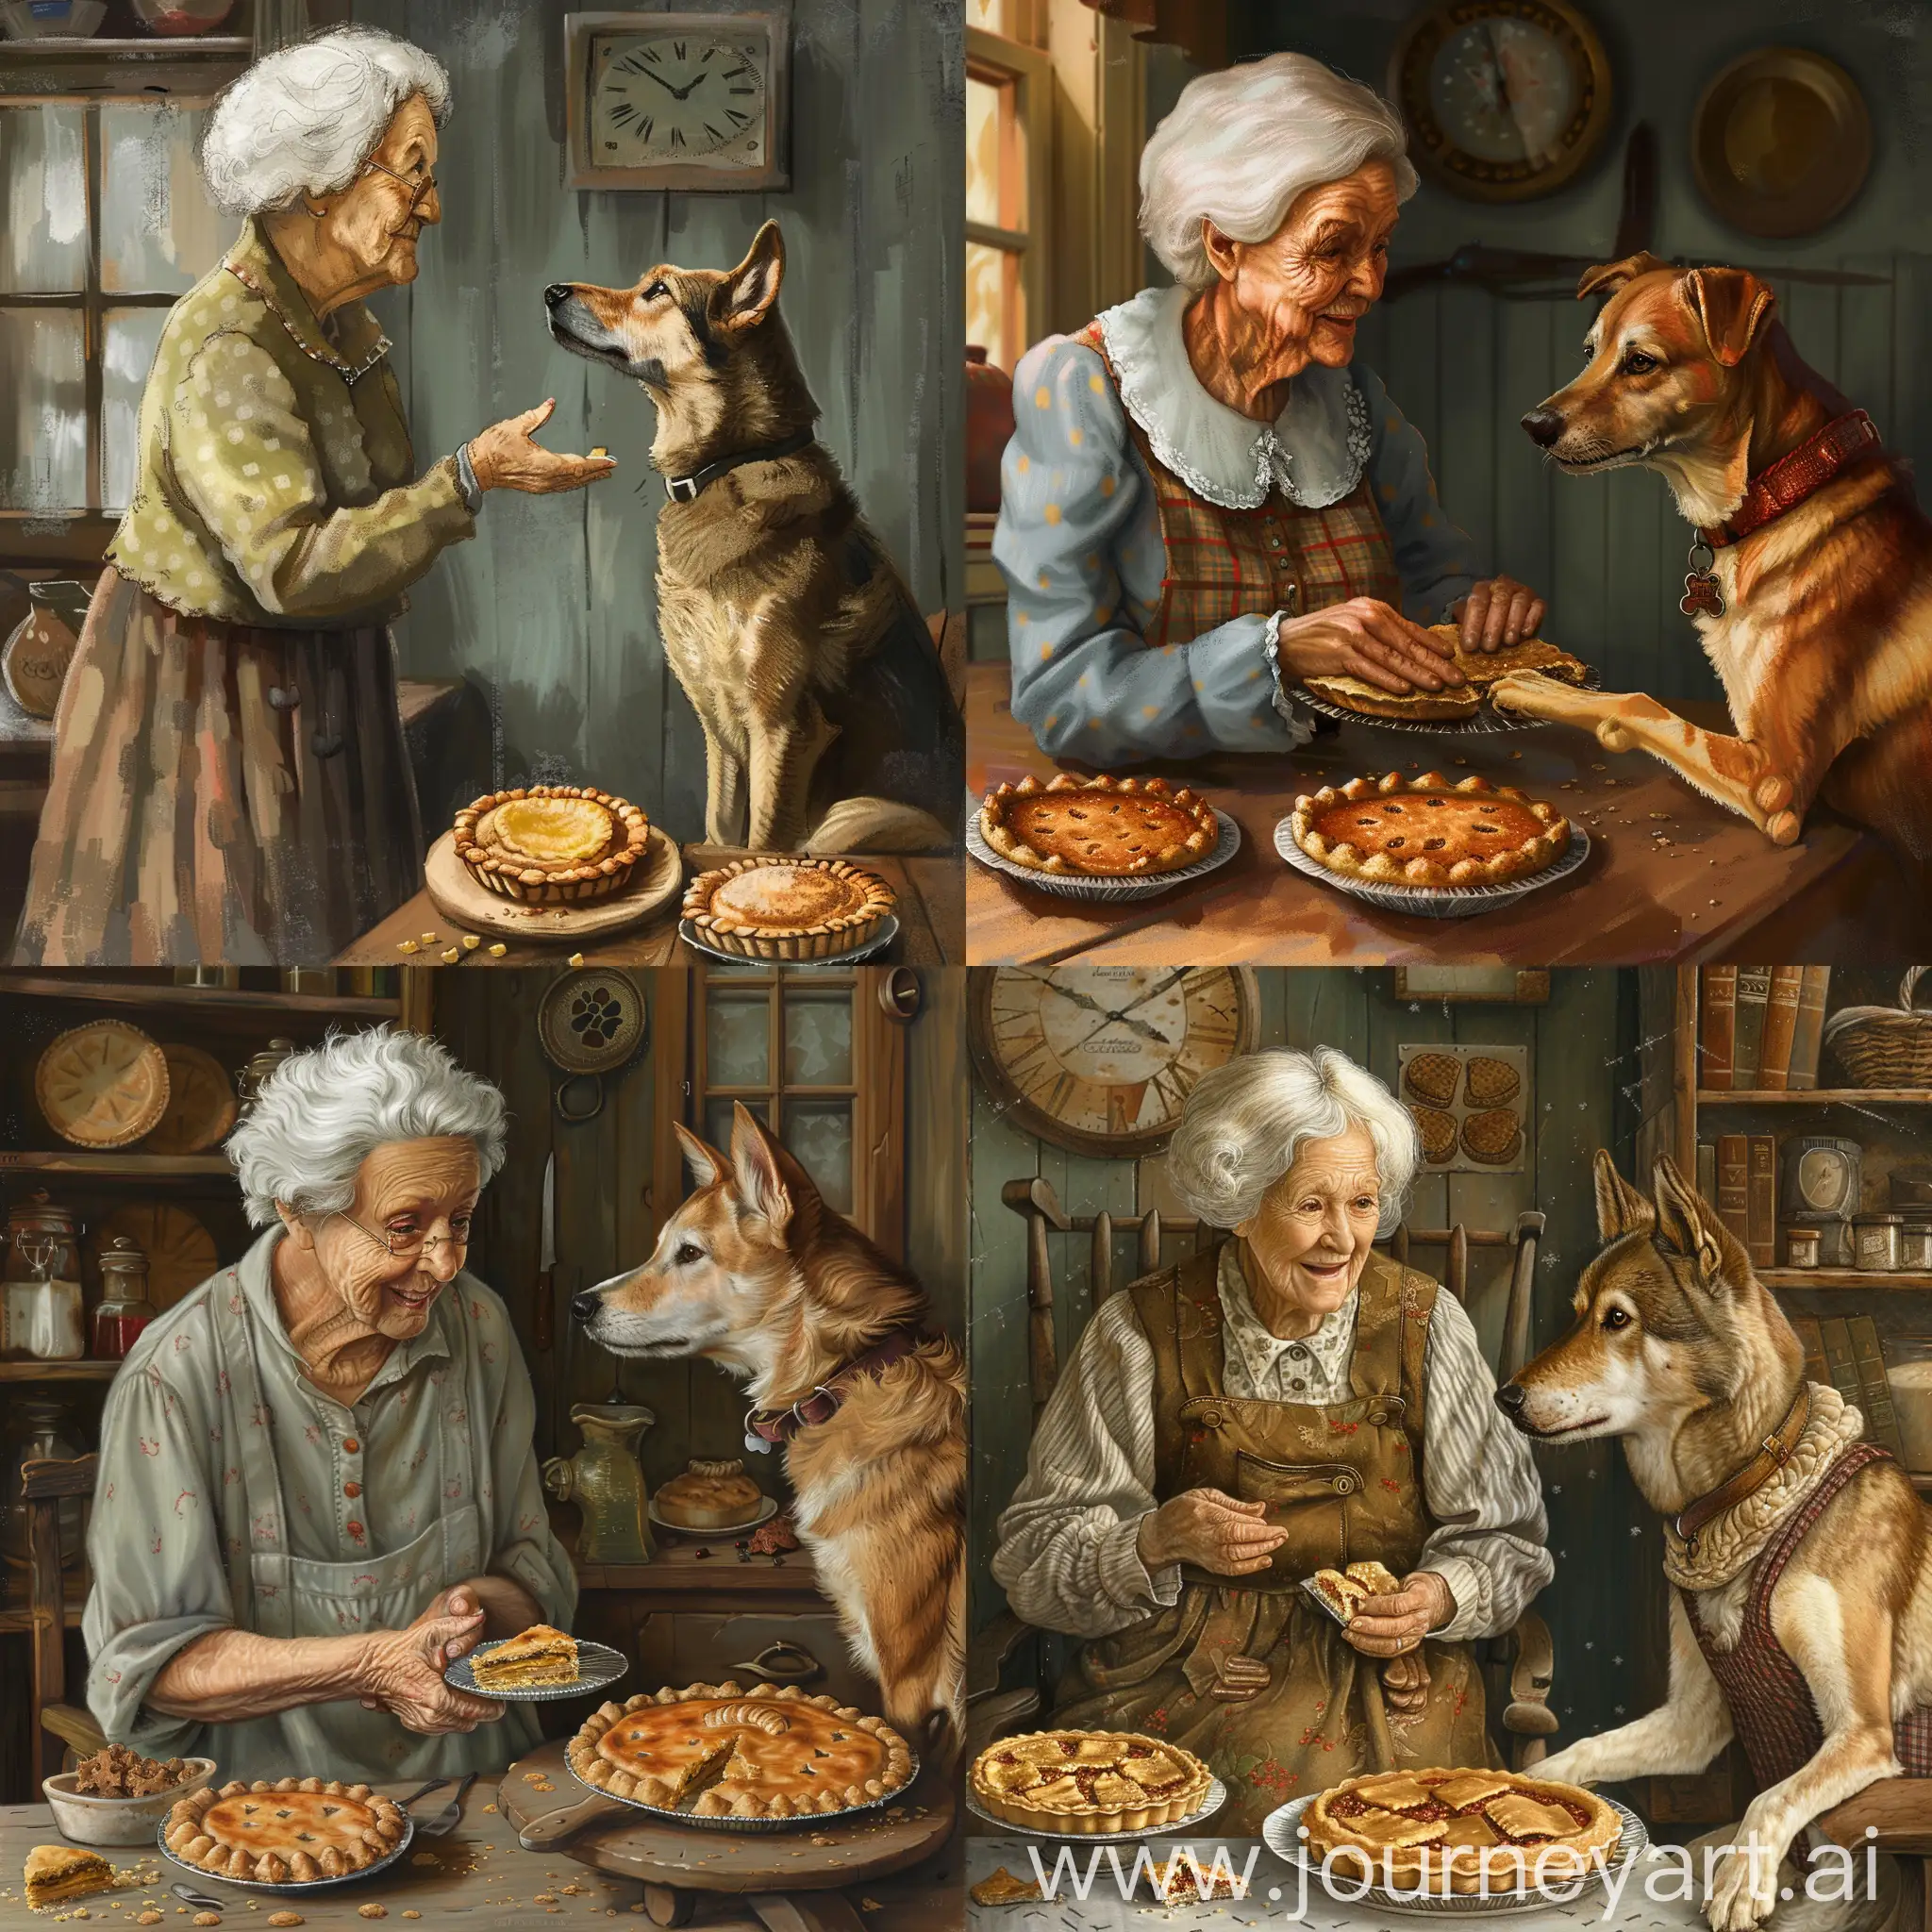 Бабушка с пирожками даёт повестку Собаке котороя уже закончила 1мировую войну